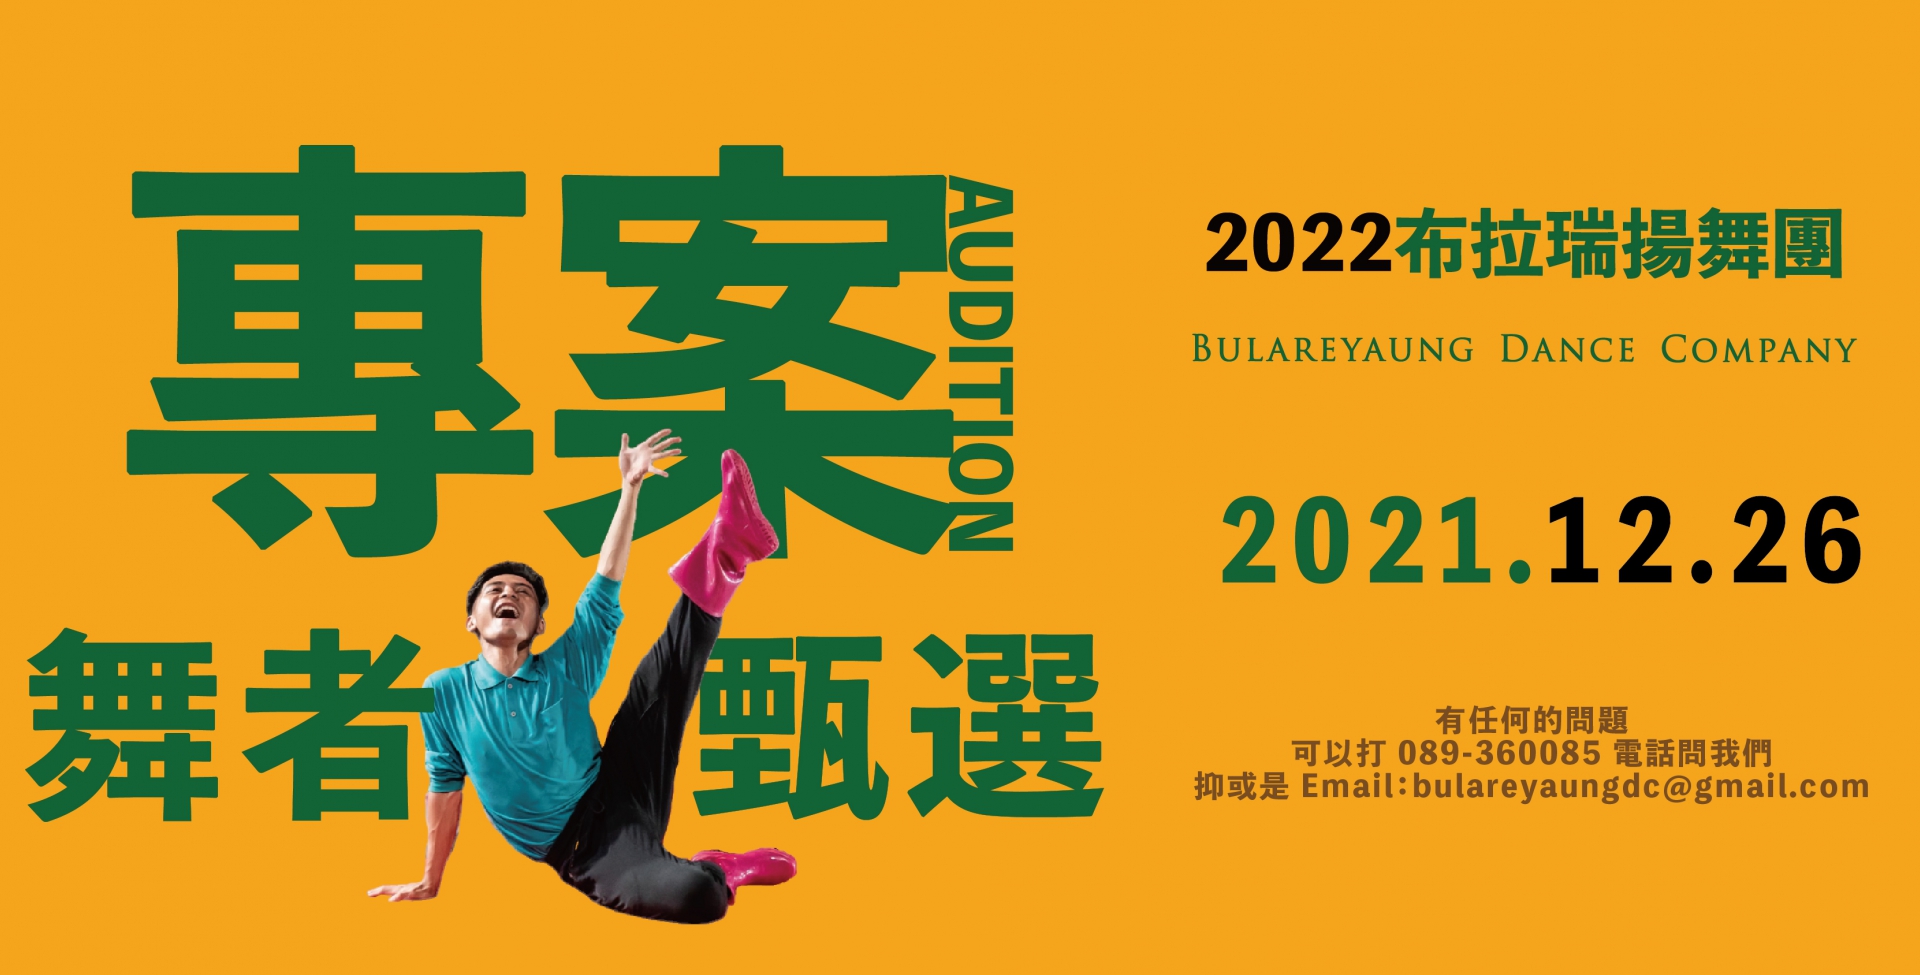 2022 BDC舞團 專案舞者 徵選